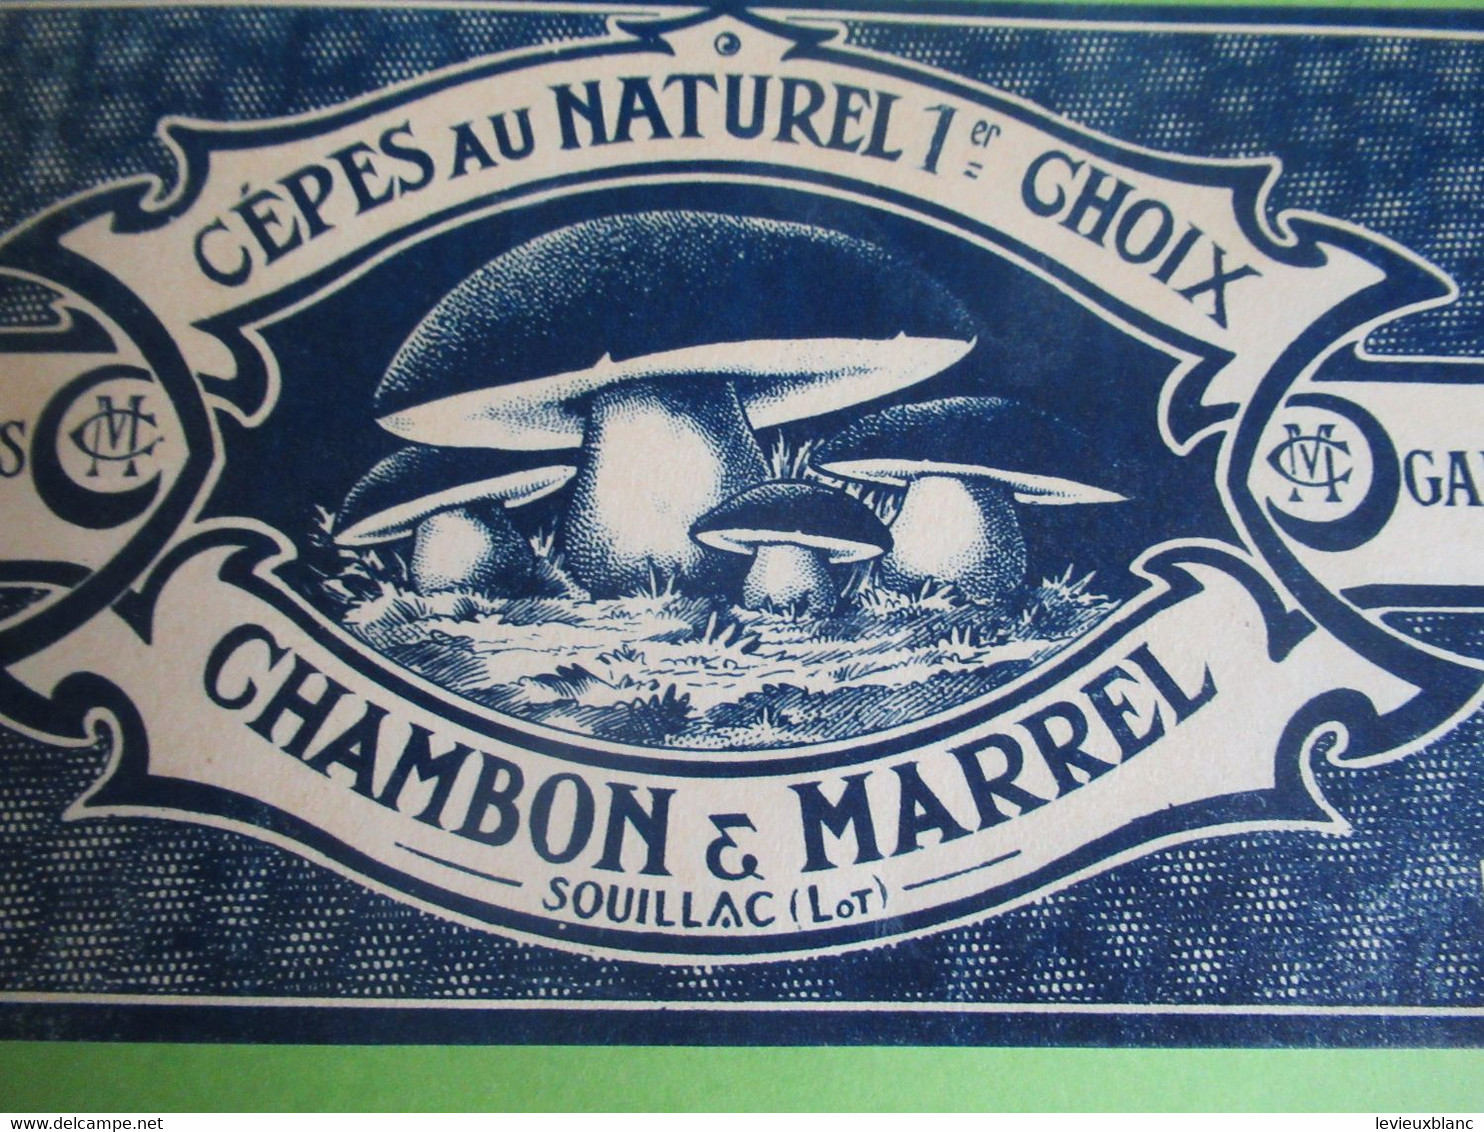 Etiquette Conserve/Cèpes Au Naturel 1er Choix/CHAMBON & MARREL/SOUILLAC ( Lot ) / Début XX                  ETIQ182 - Frutas Y Legumbres